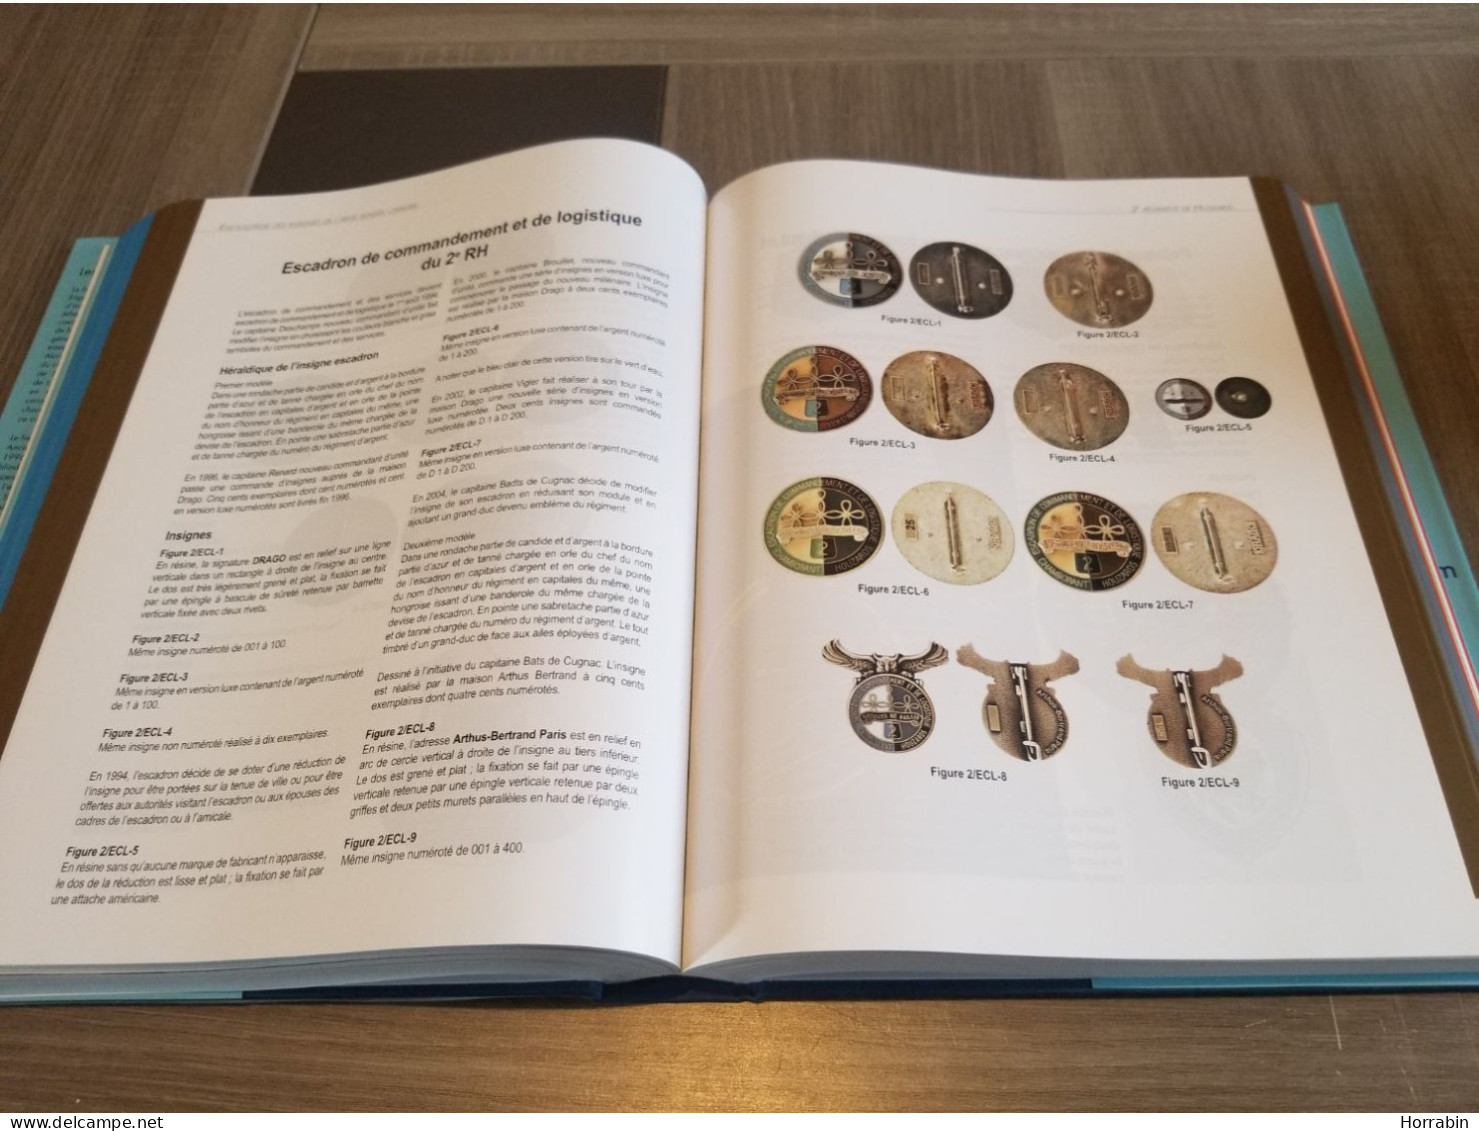 Encyclopédie Des Insignes De L'Arme Blindée Cavalerie / Tome 5 / Les Hussards - Frankrijk